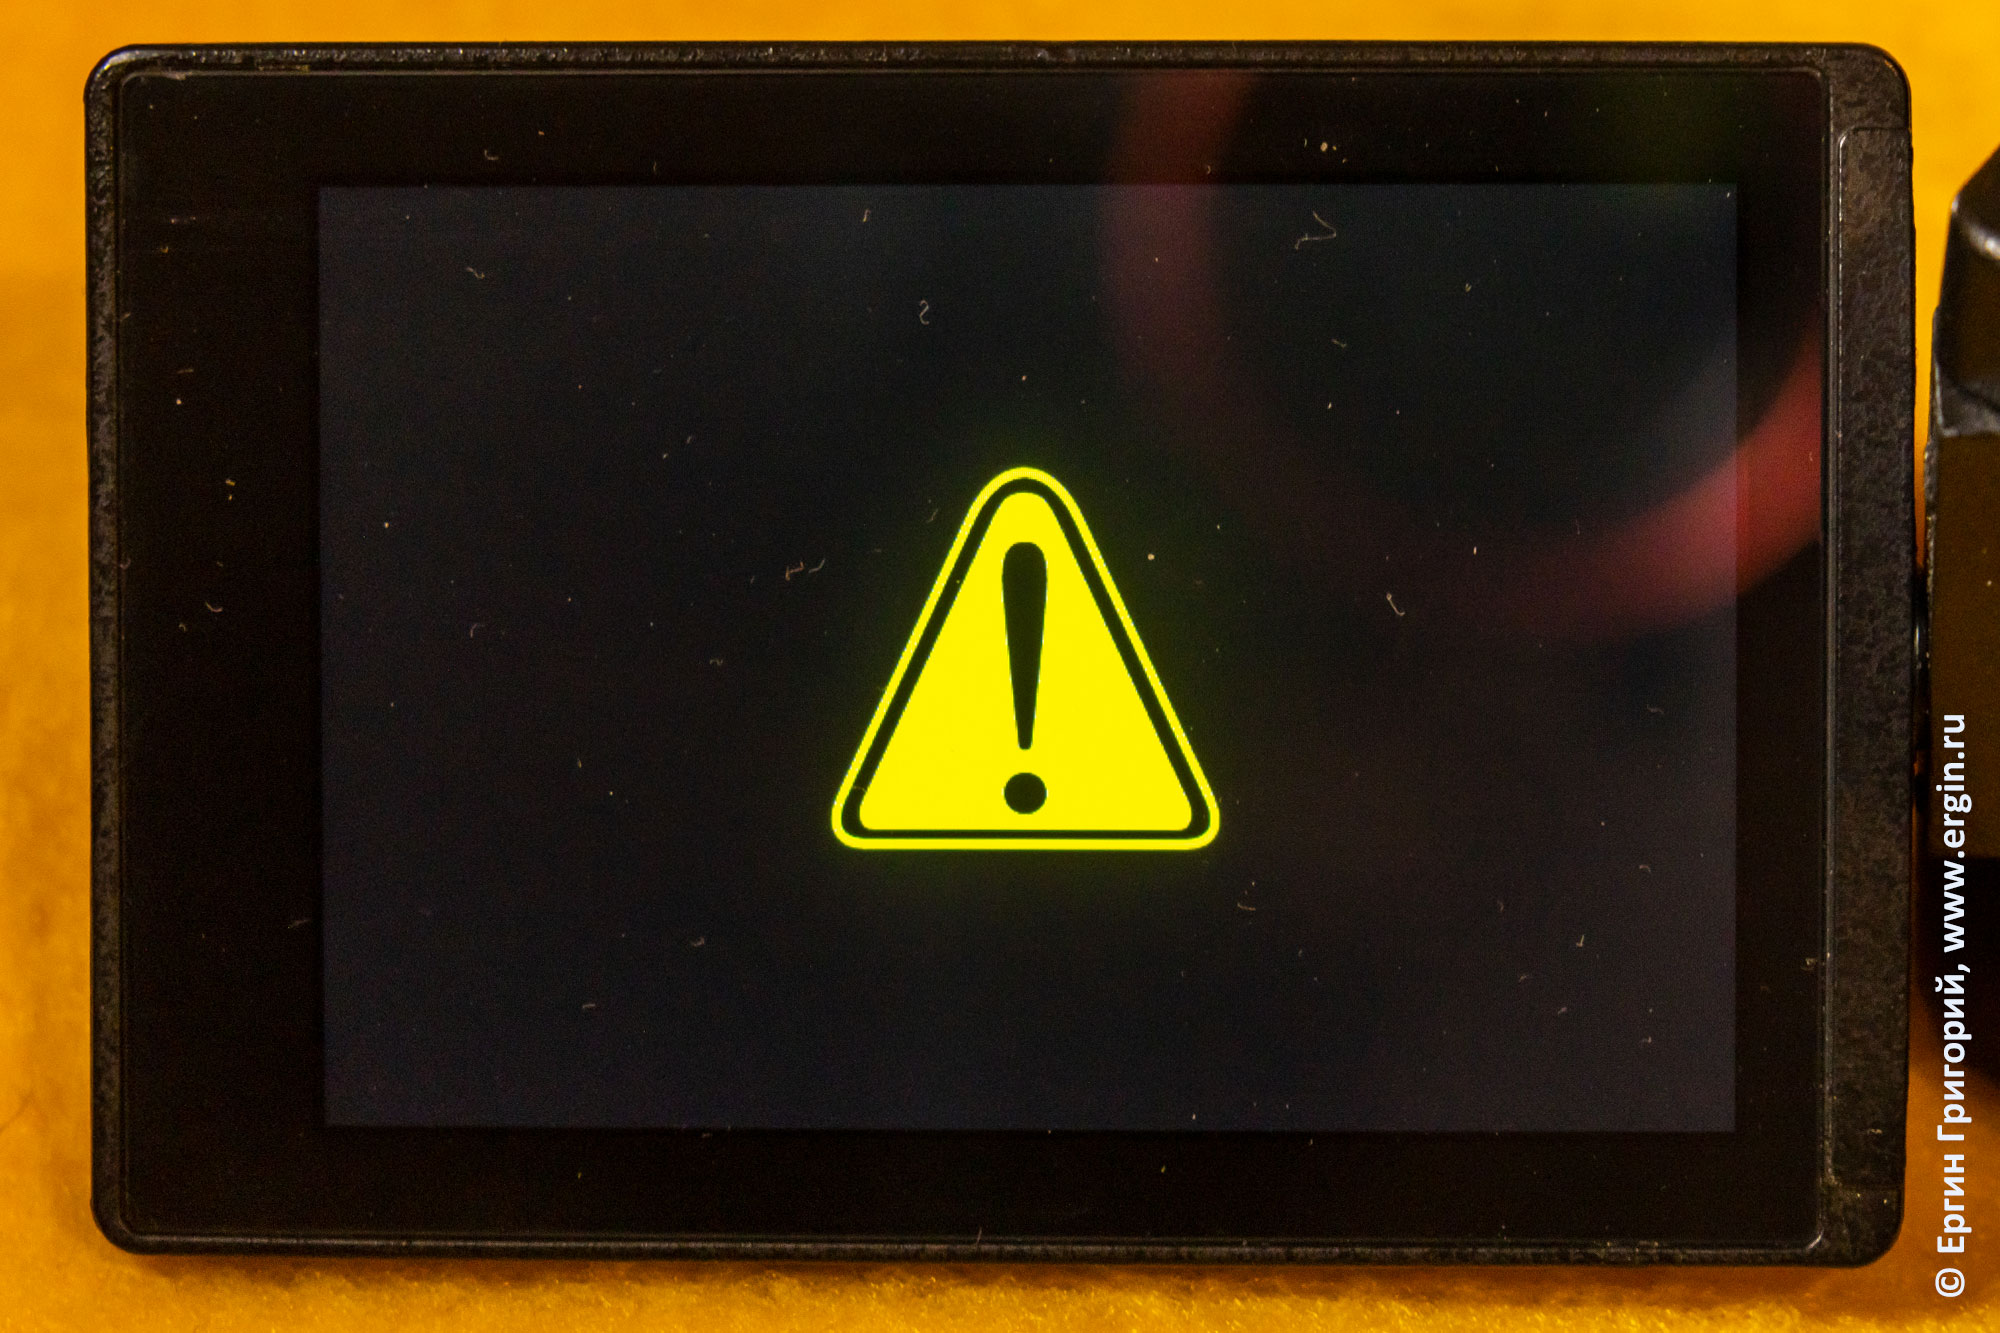 Экран Panasonic DMC-FZ300: предупреждение о сервисном режиме